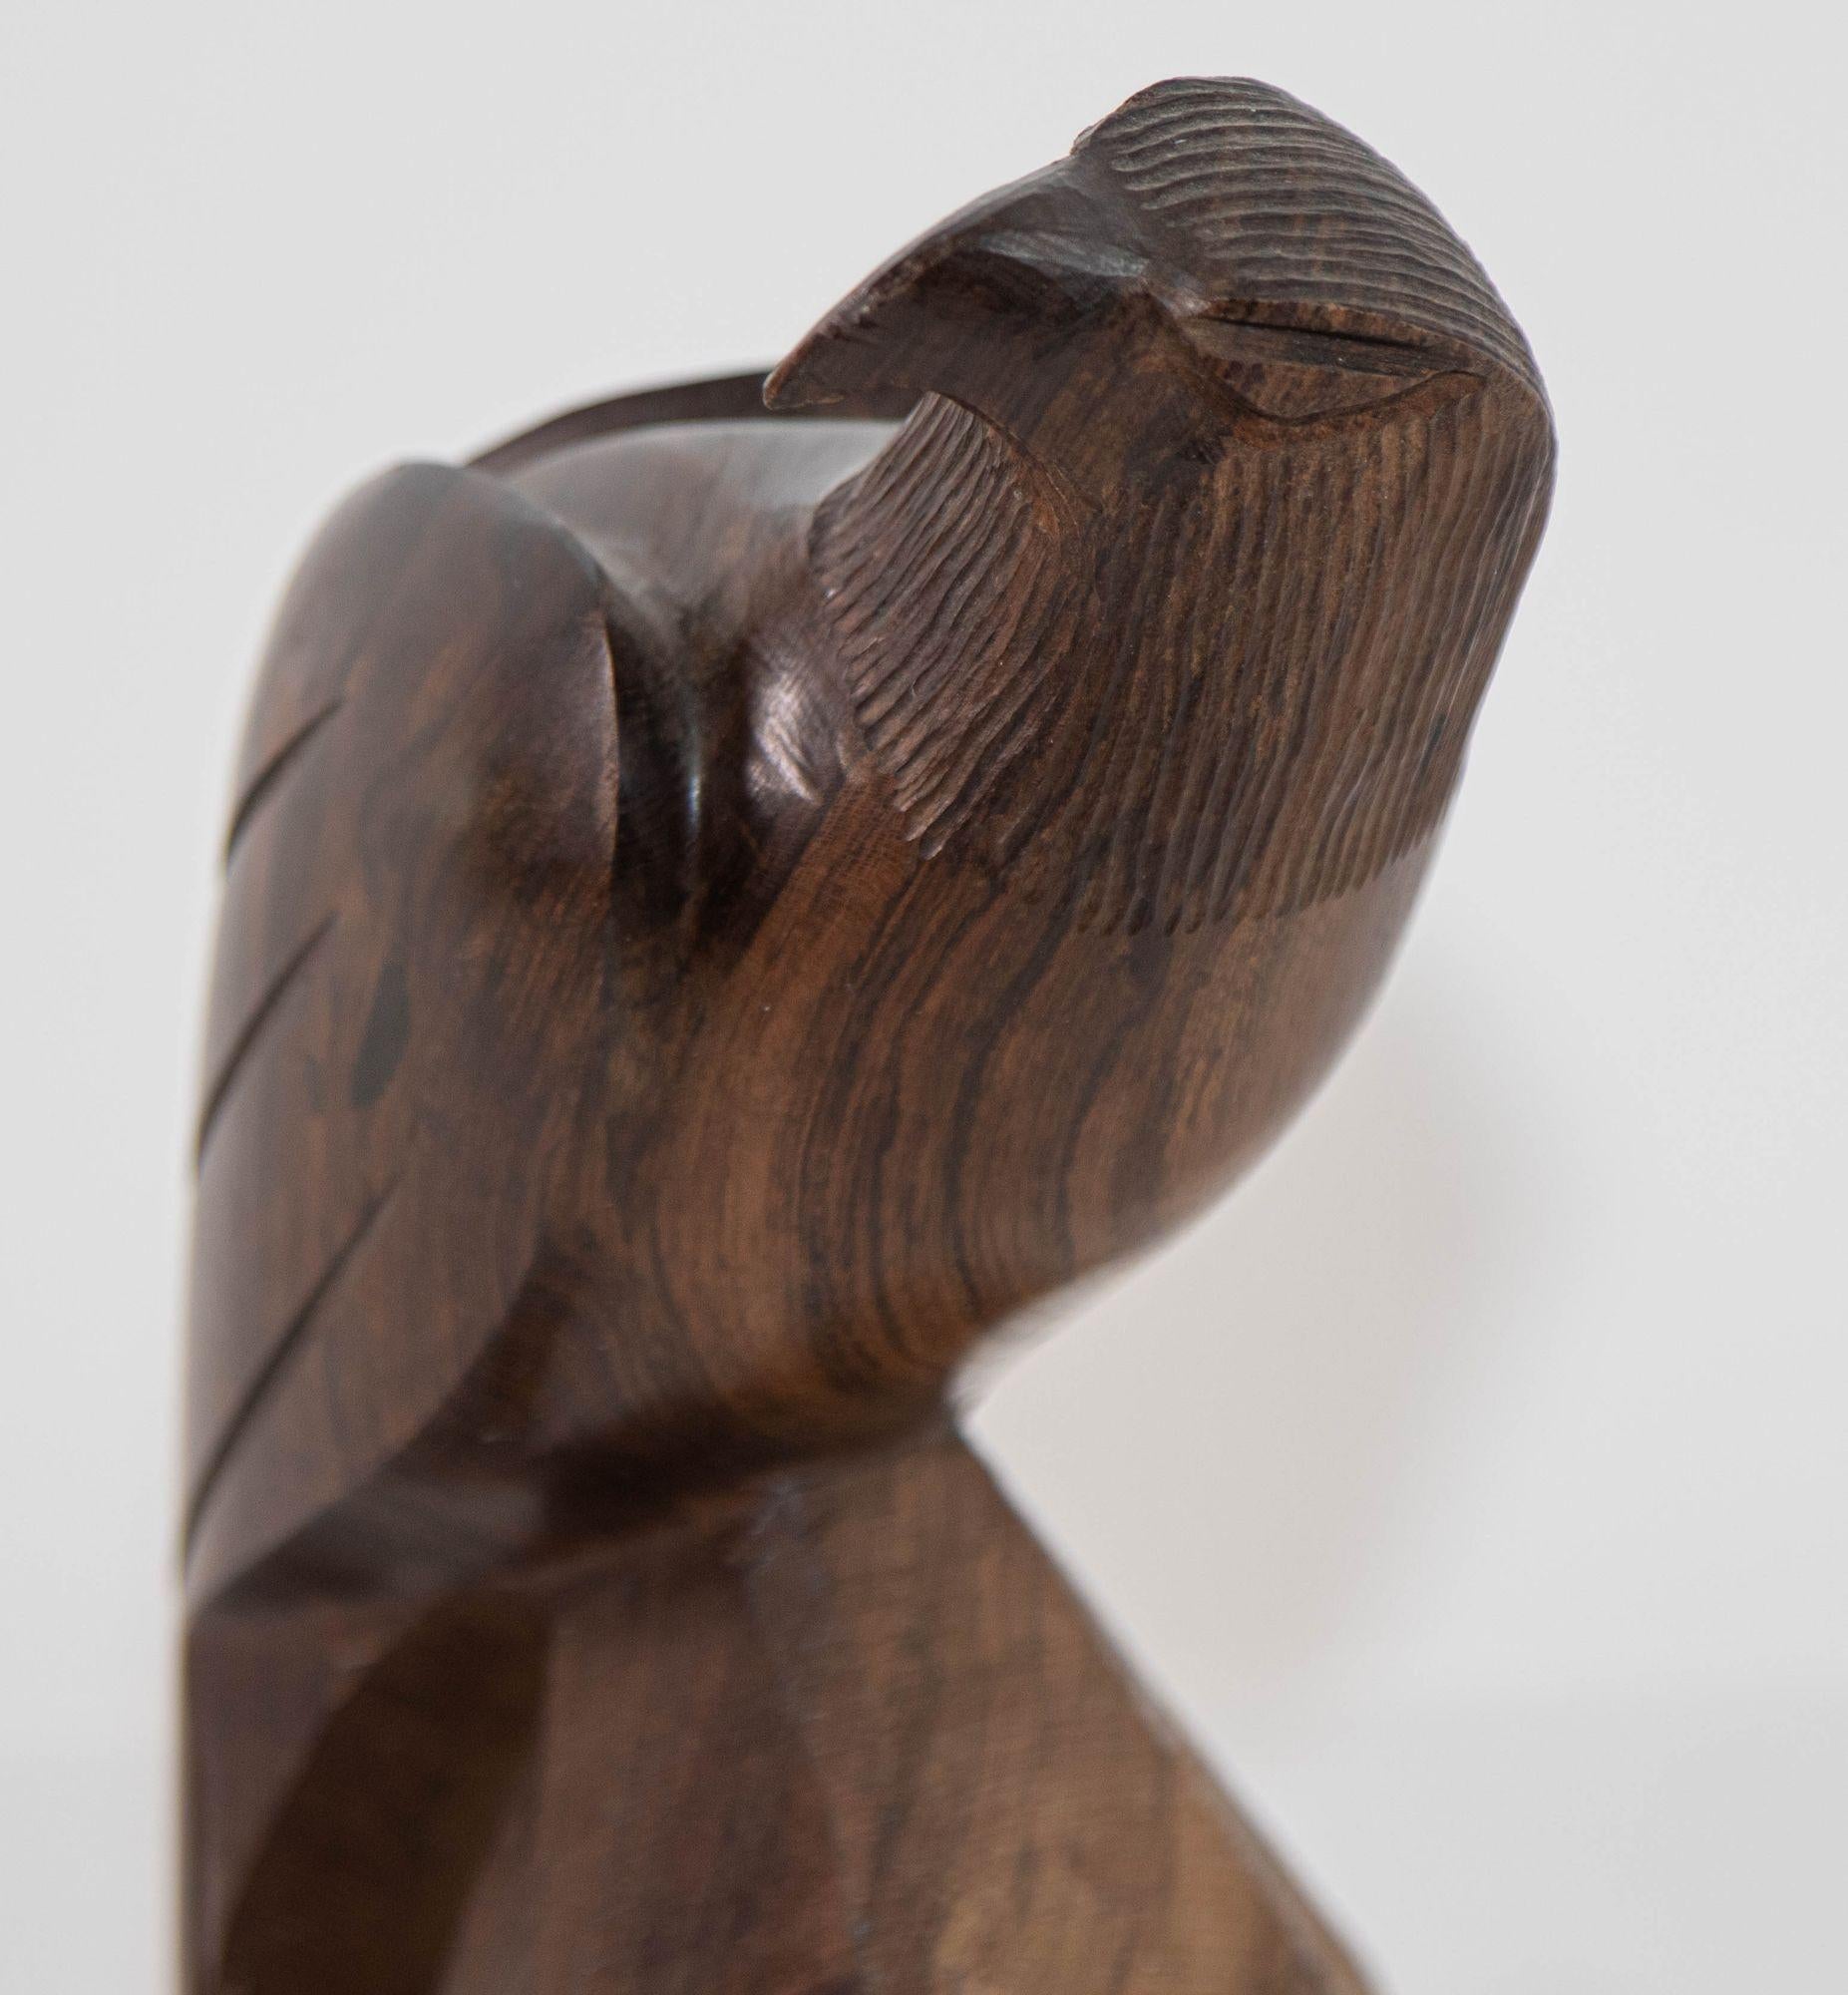 Sculpture de l'aigle américain en bois sculpté 1960.
Sculpture vintage d'un aigle américain sculptée en bois de fer sérifié.
Sculpture d'aigle en bois sculpté, faite à la main, 1960.
Vintage Seri Ironwood Animal Sculpture sculptée à la main d'un